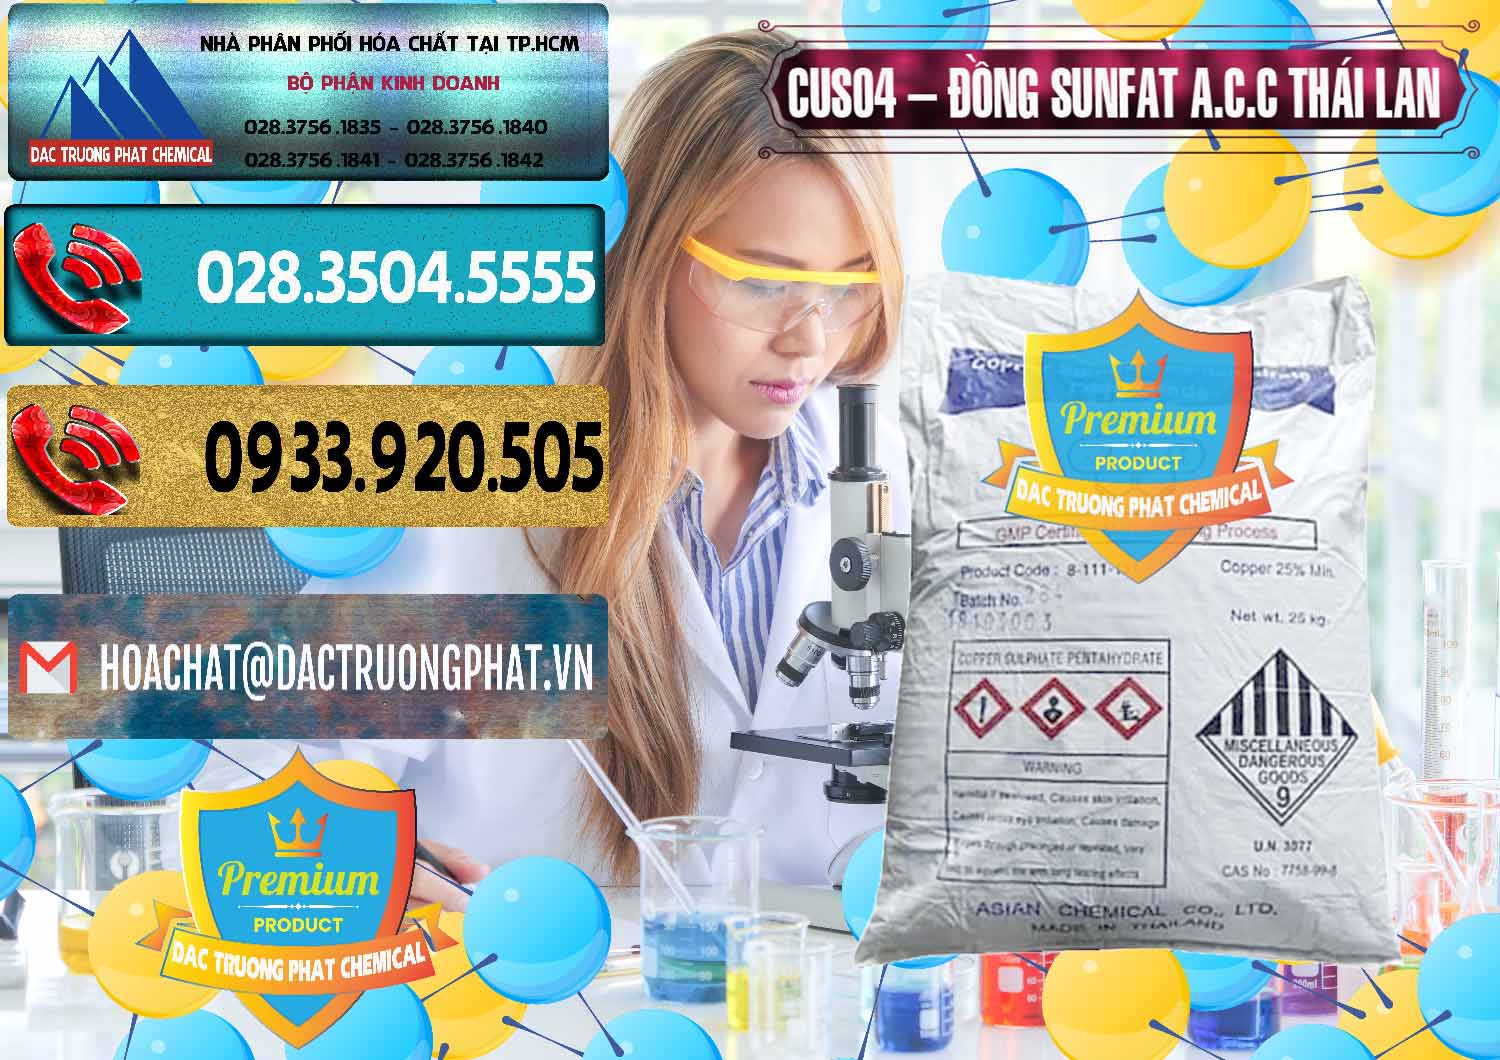 Công ty bán - phân phối CuSO4 – Đồng Sunfat A.C.C Thái Lan - 0249 - Nơi phân phối ( nhập khẩu ) hóa chất tại TP.HCM - hoachatdetnhuom.com